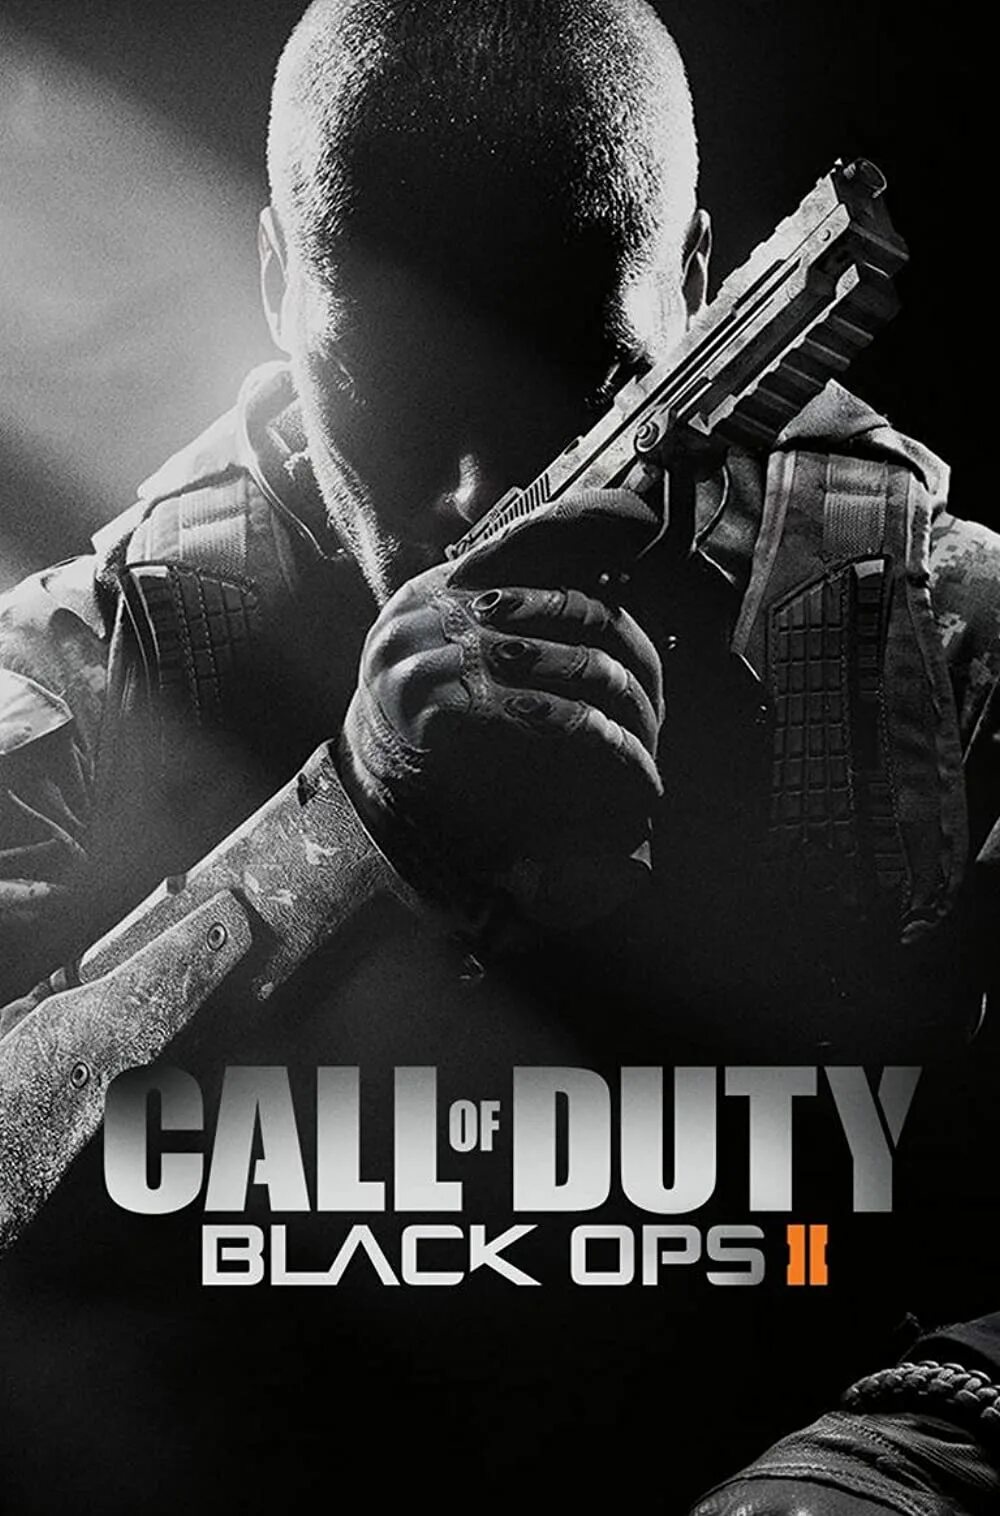 Кол оф дьюти опс 2. Call of Duty Black ops ii2. Cod Блэк ОПС 2. Call of Duty Black ops 2 обложка. Call of Duty Black ops II Постер.